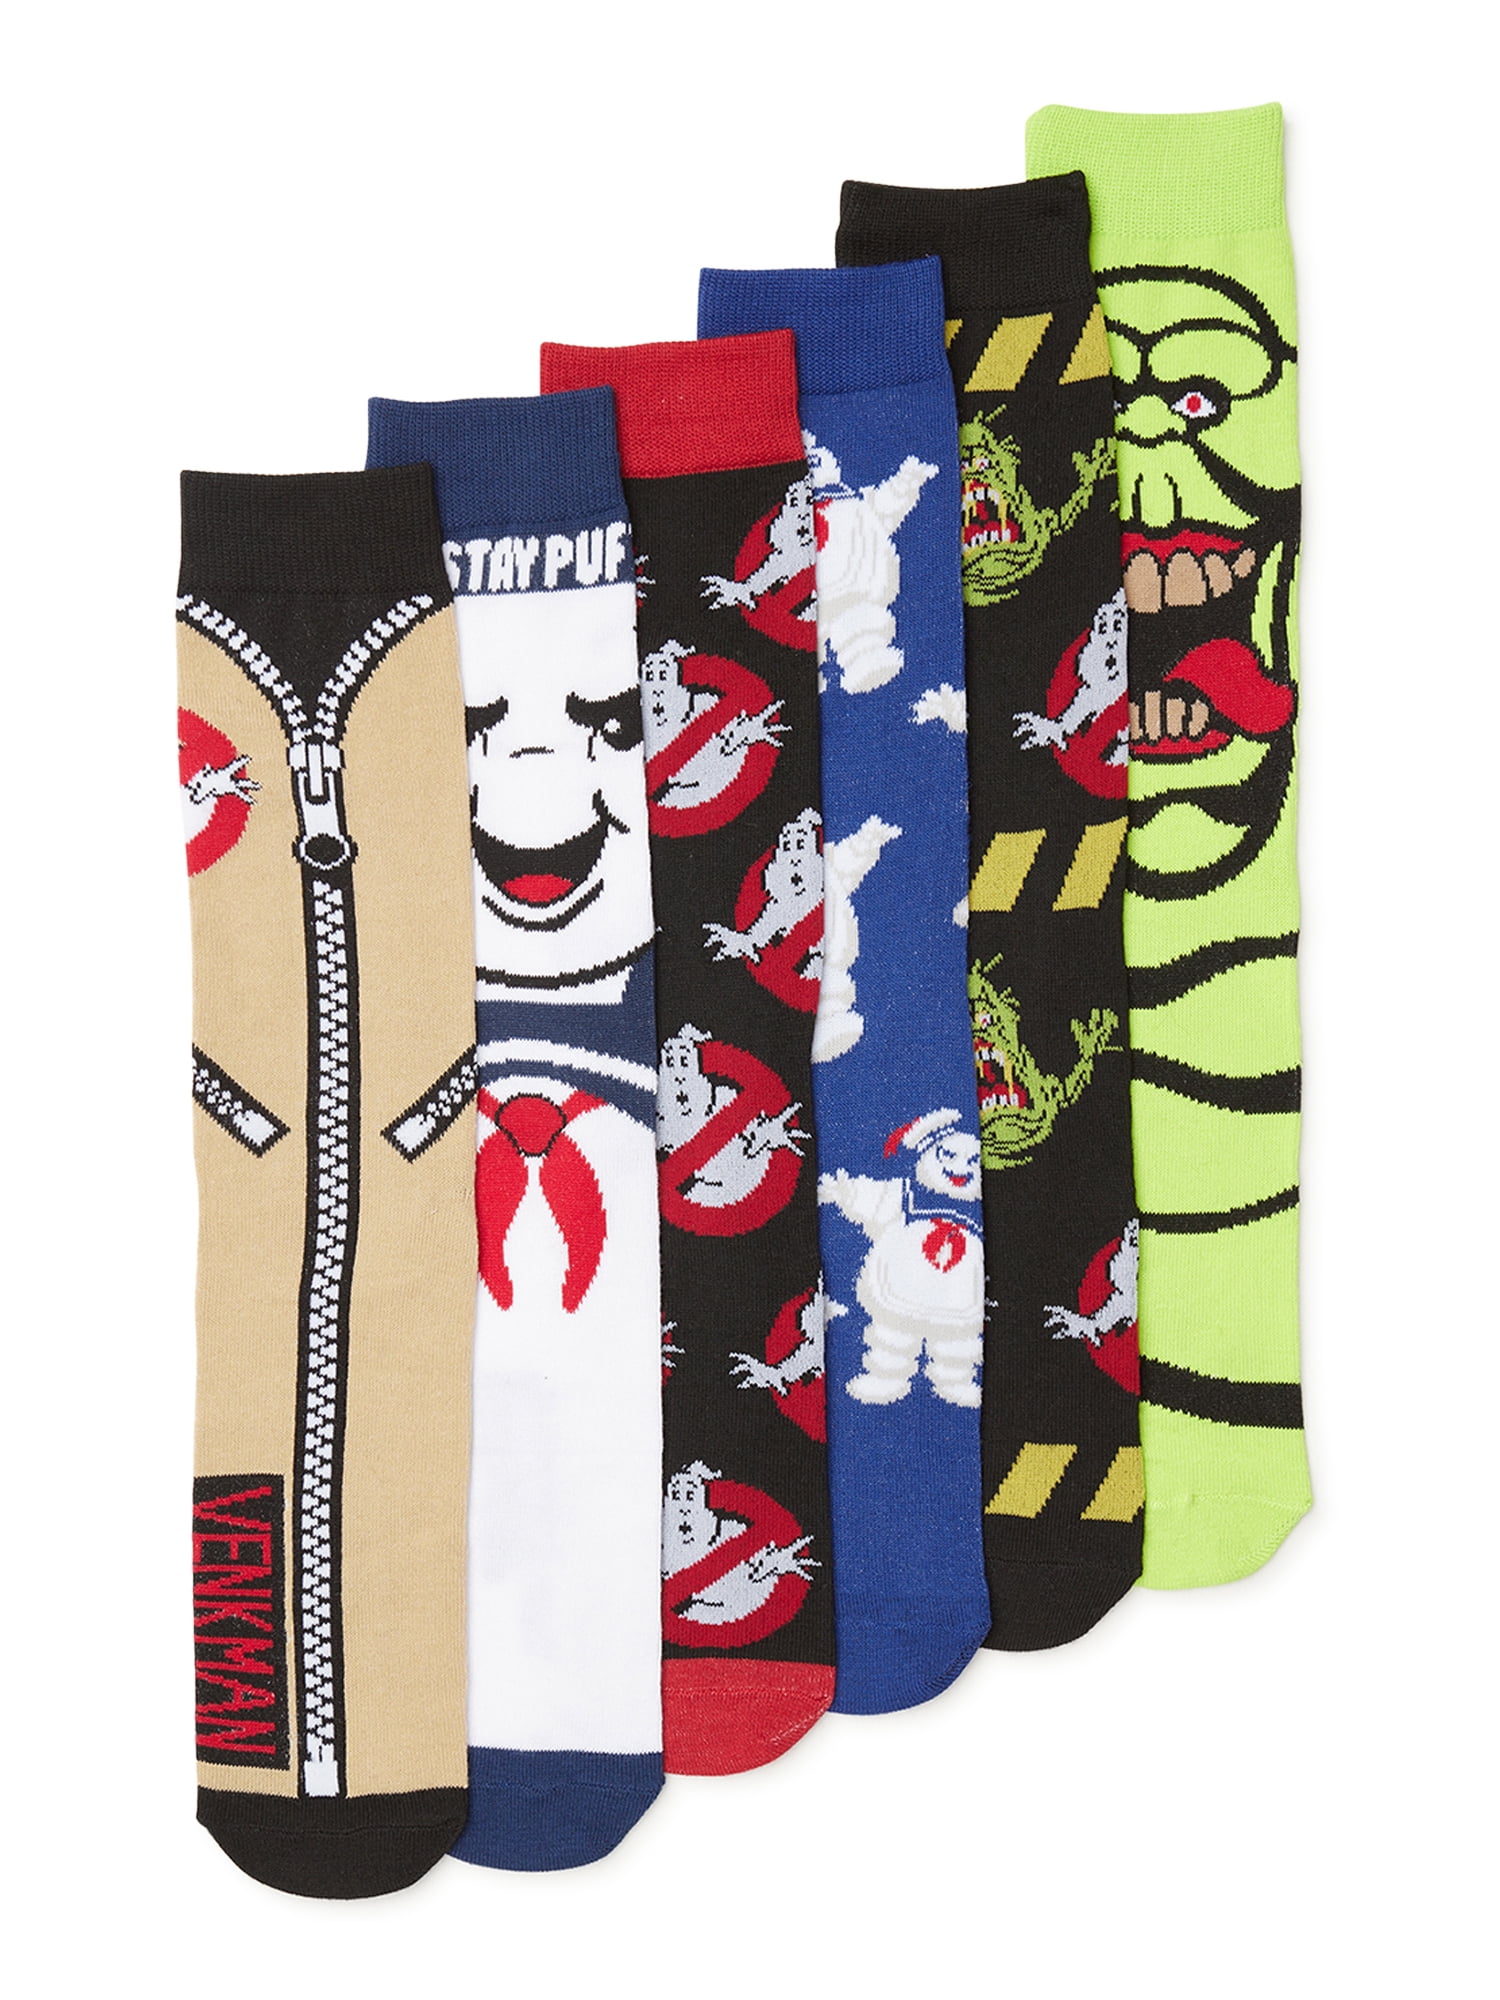 Ghostbusters Mens Socks, 6-Pack 